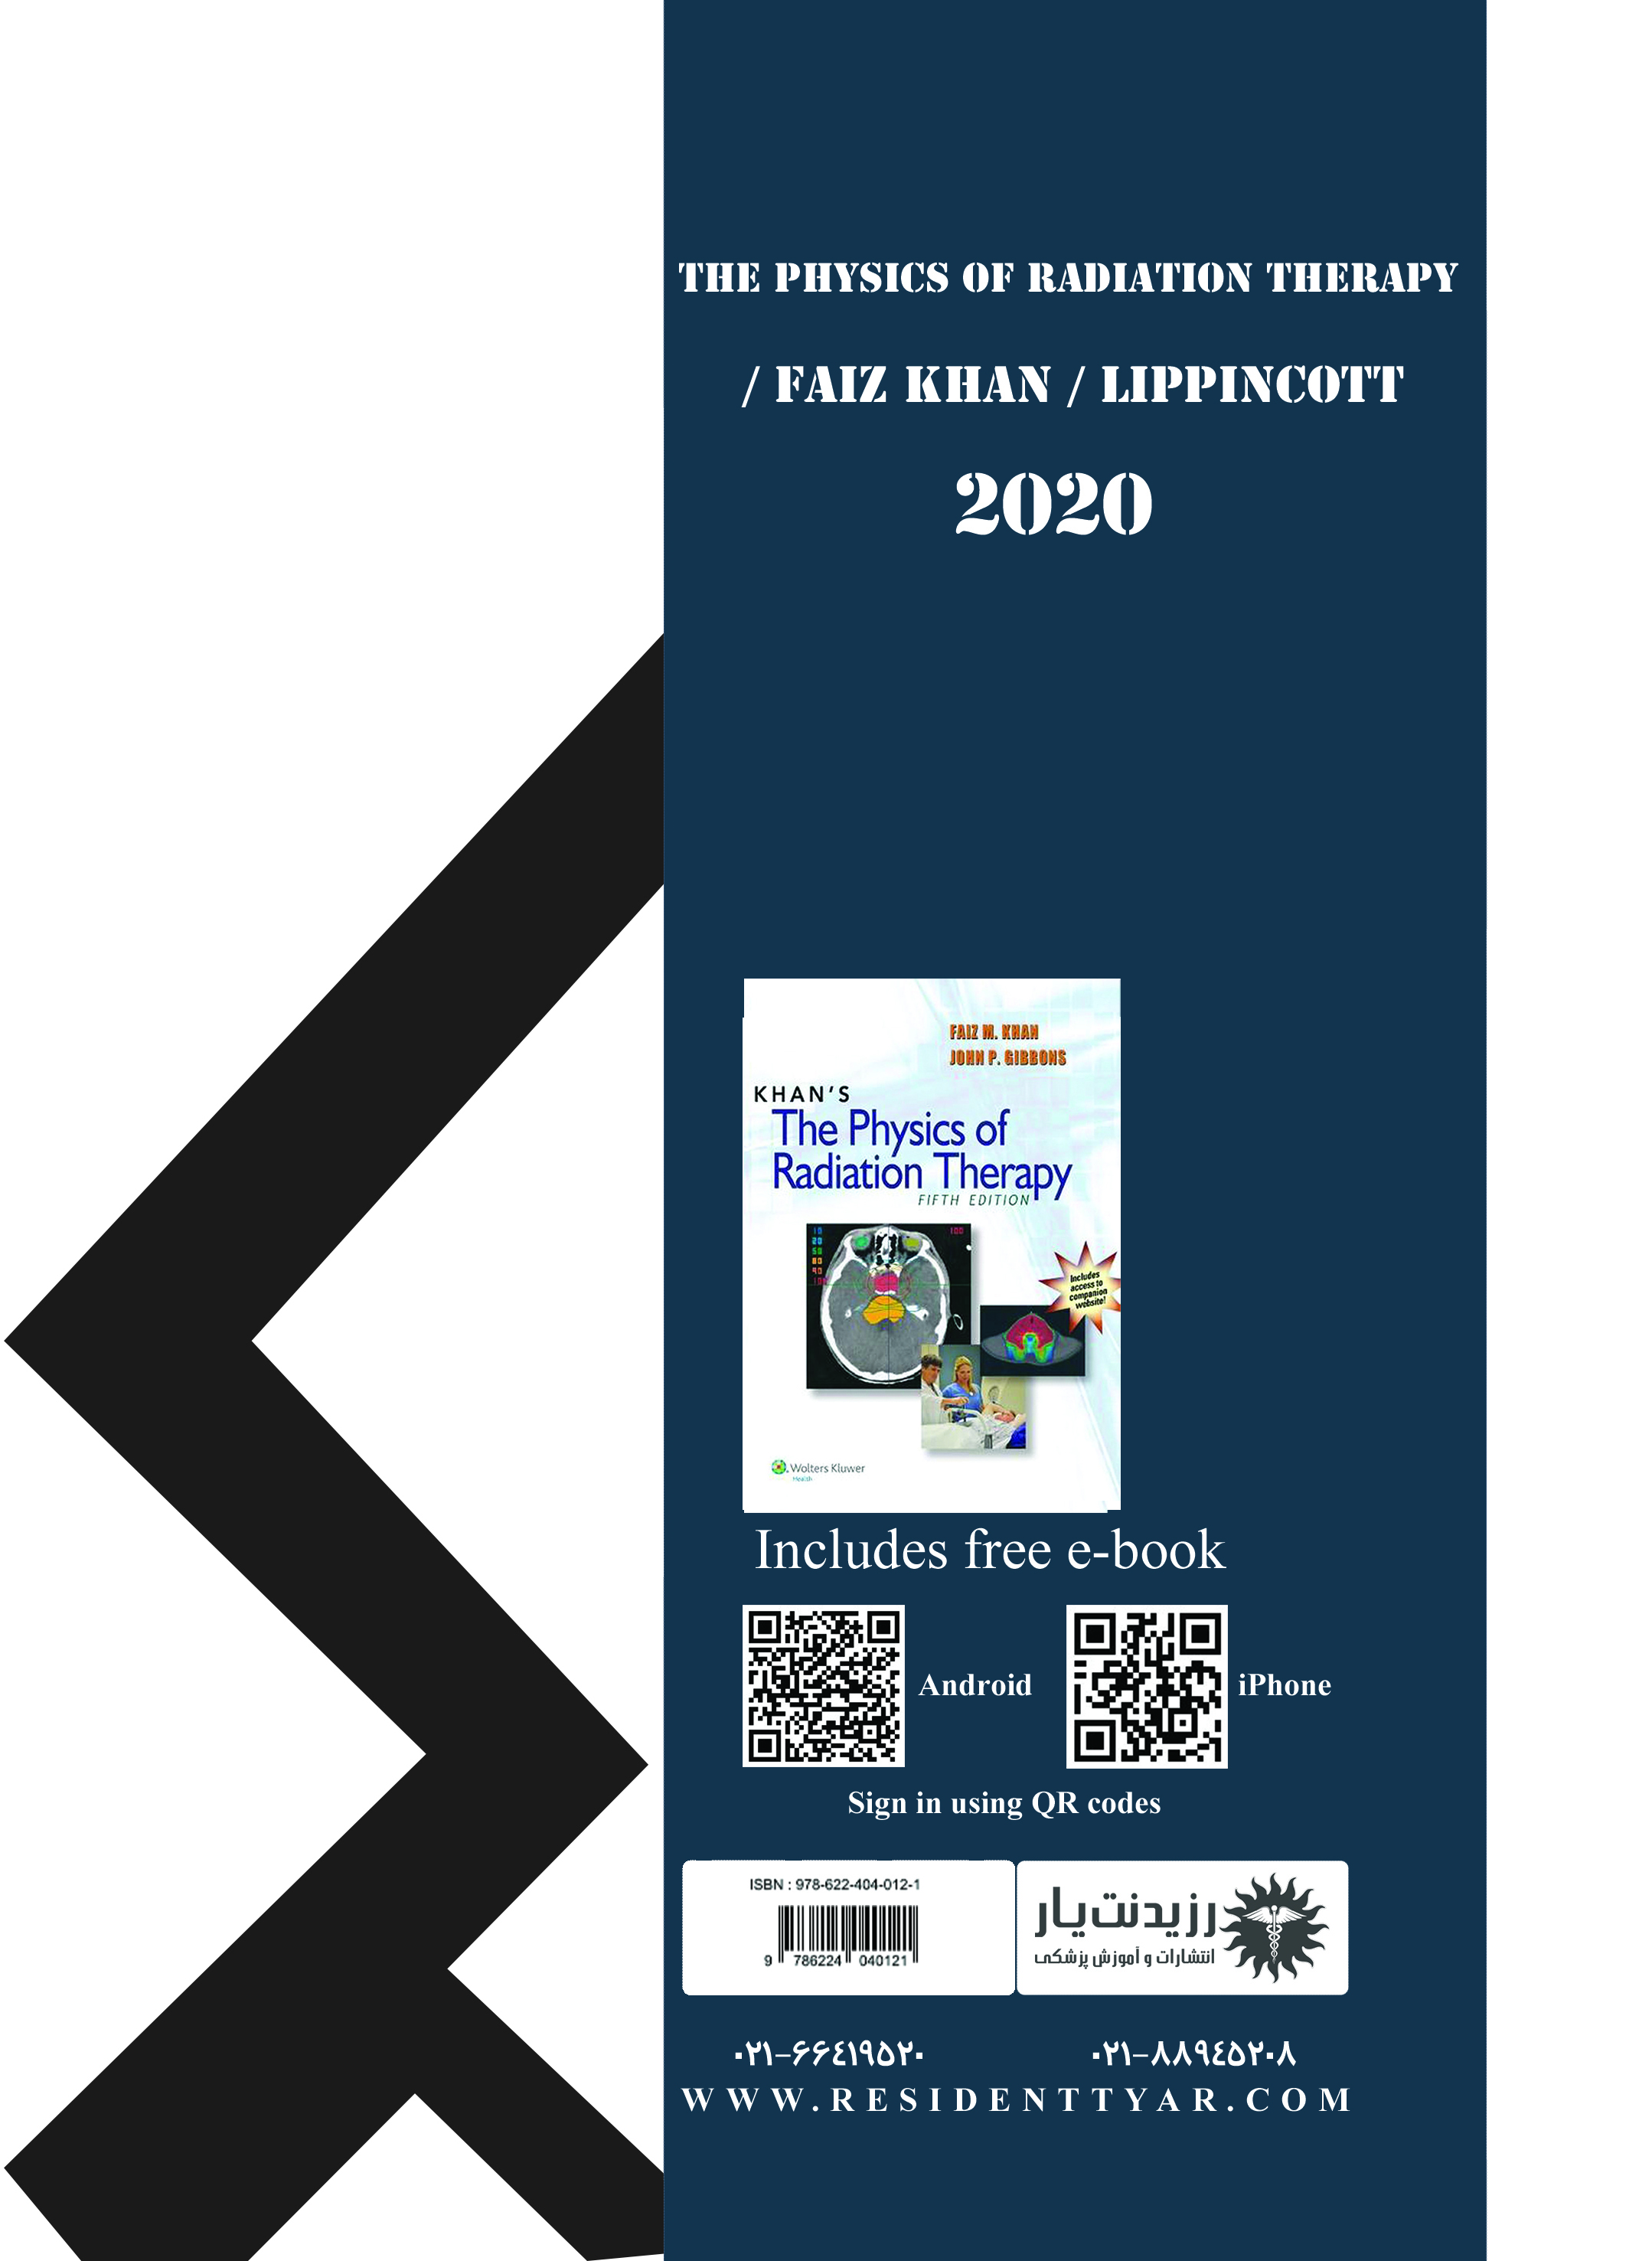 جلد 14 رادیوآنکولوژی: مرور سریع بر فیزیک رادیوتراپی خان - پشت جلد